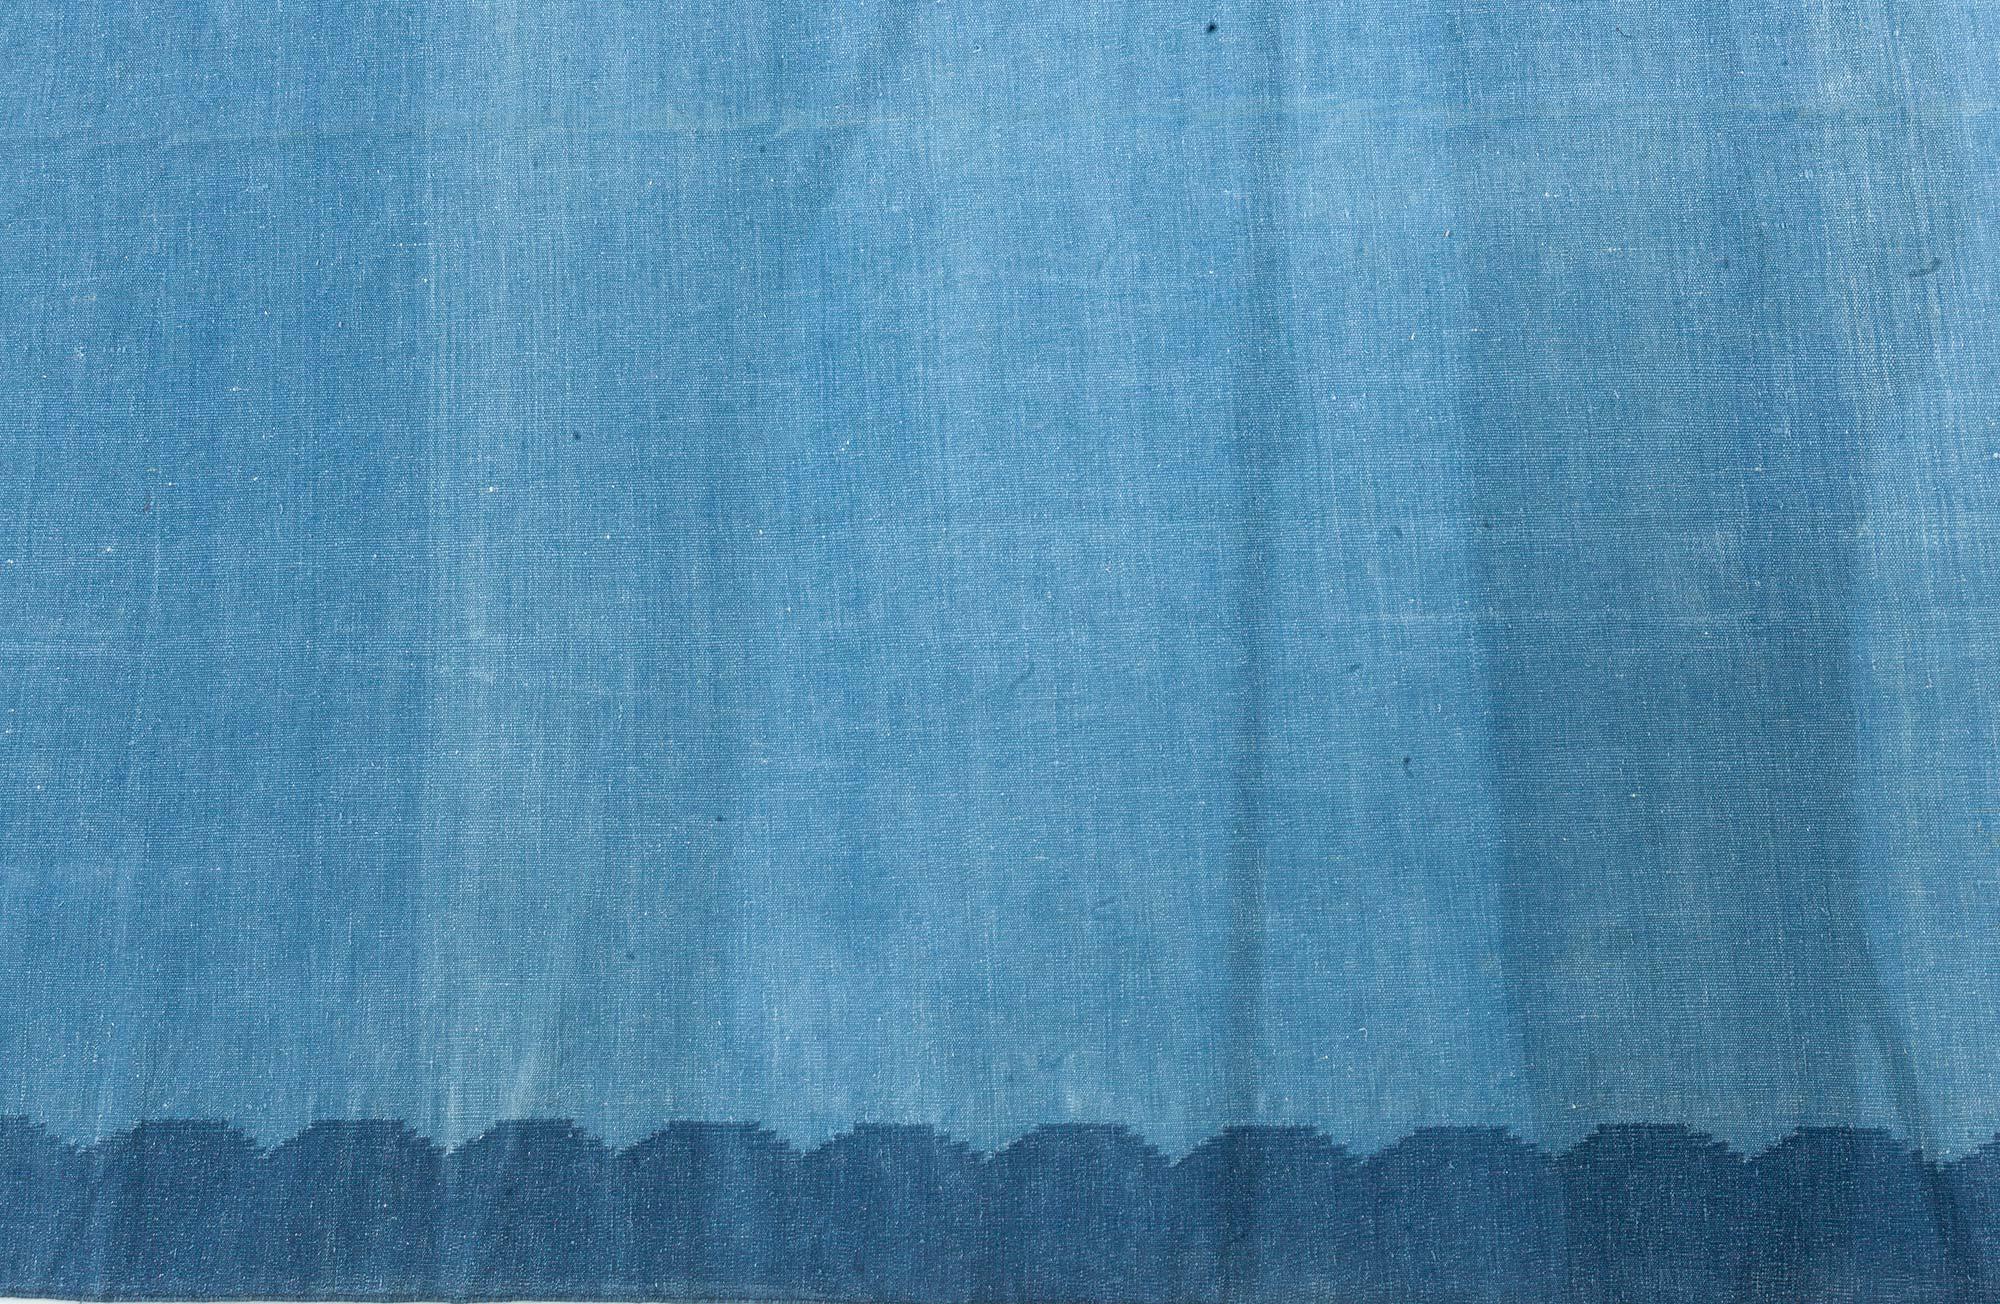 Vintage Indian Dhurrie blue rug
Size: 10'0